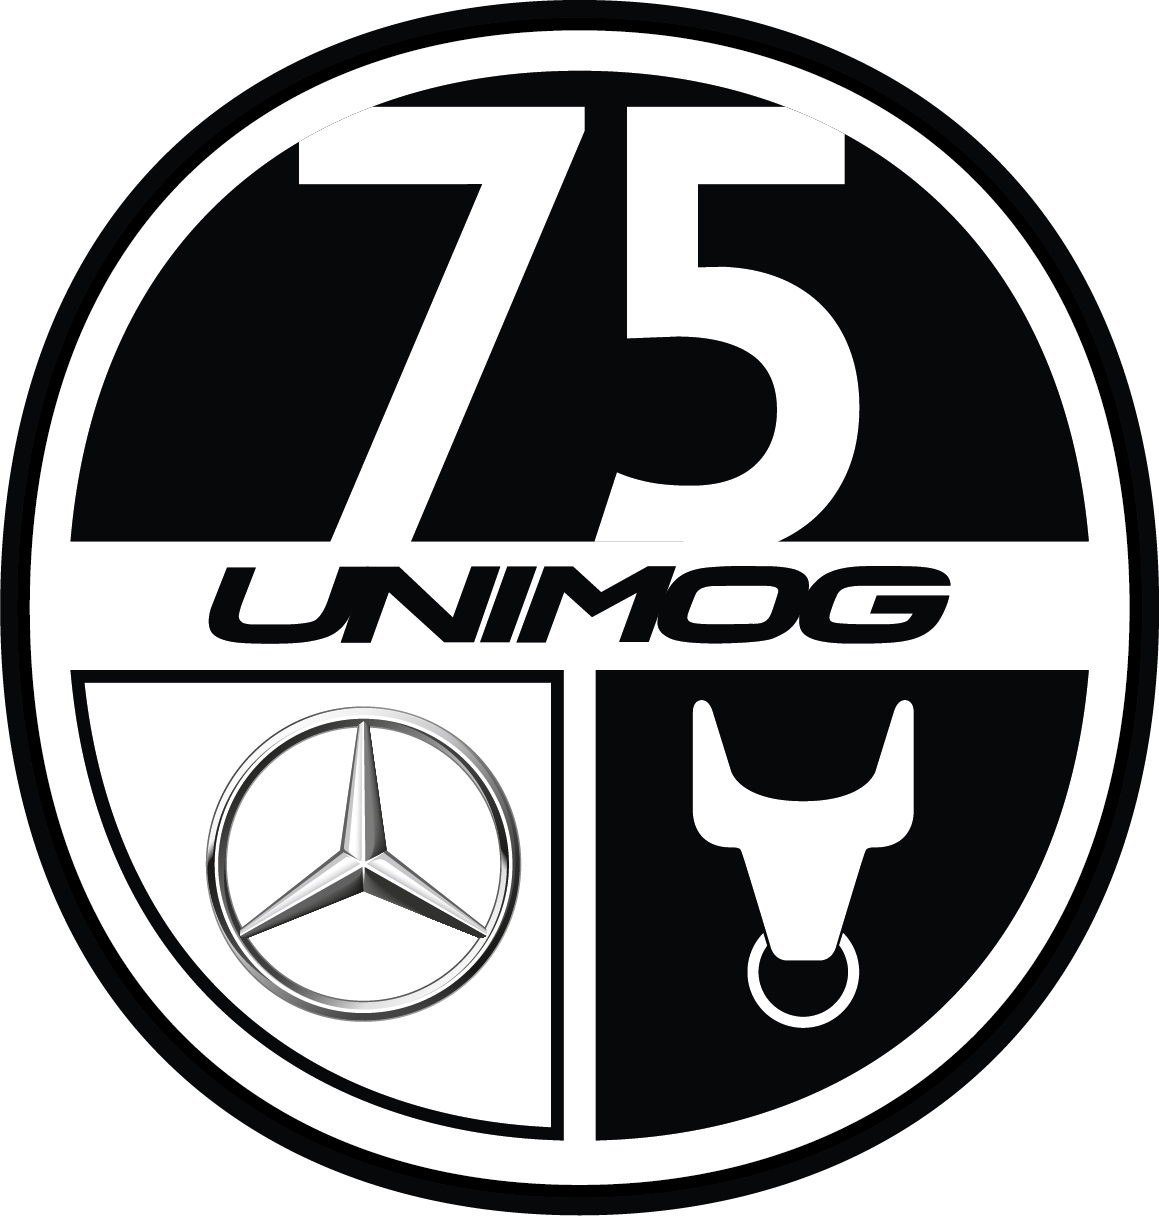 75-Jahre-Logo